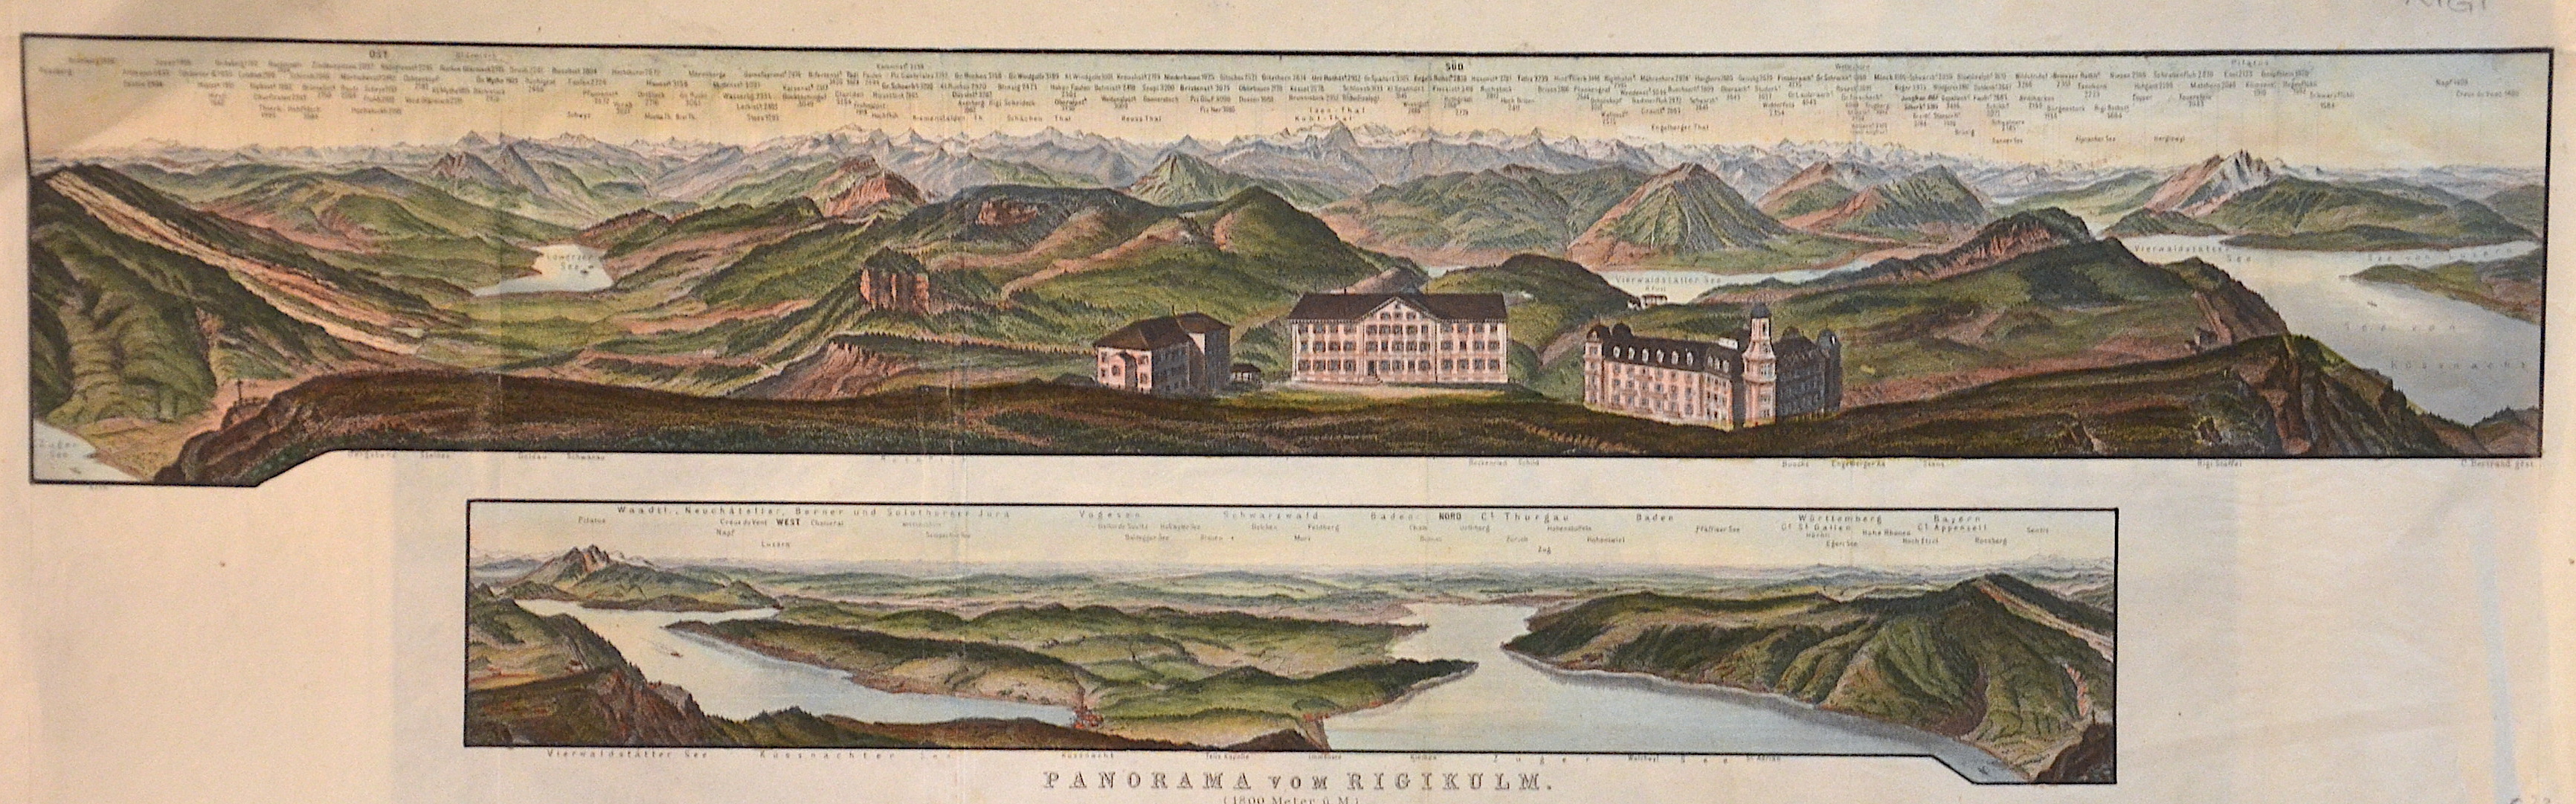 Bertrand C. Panorama vom Rigikulm. (1800 Meter ü. M.)